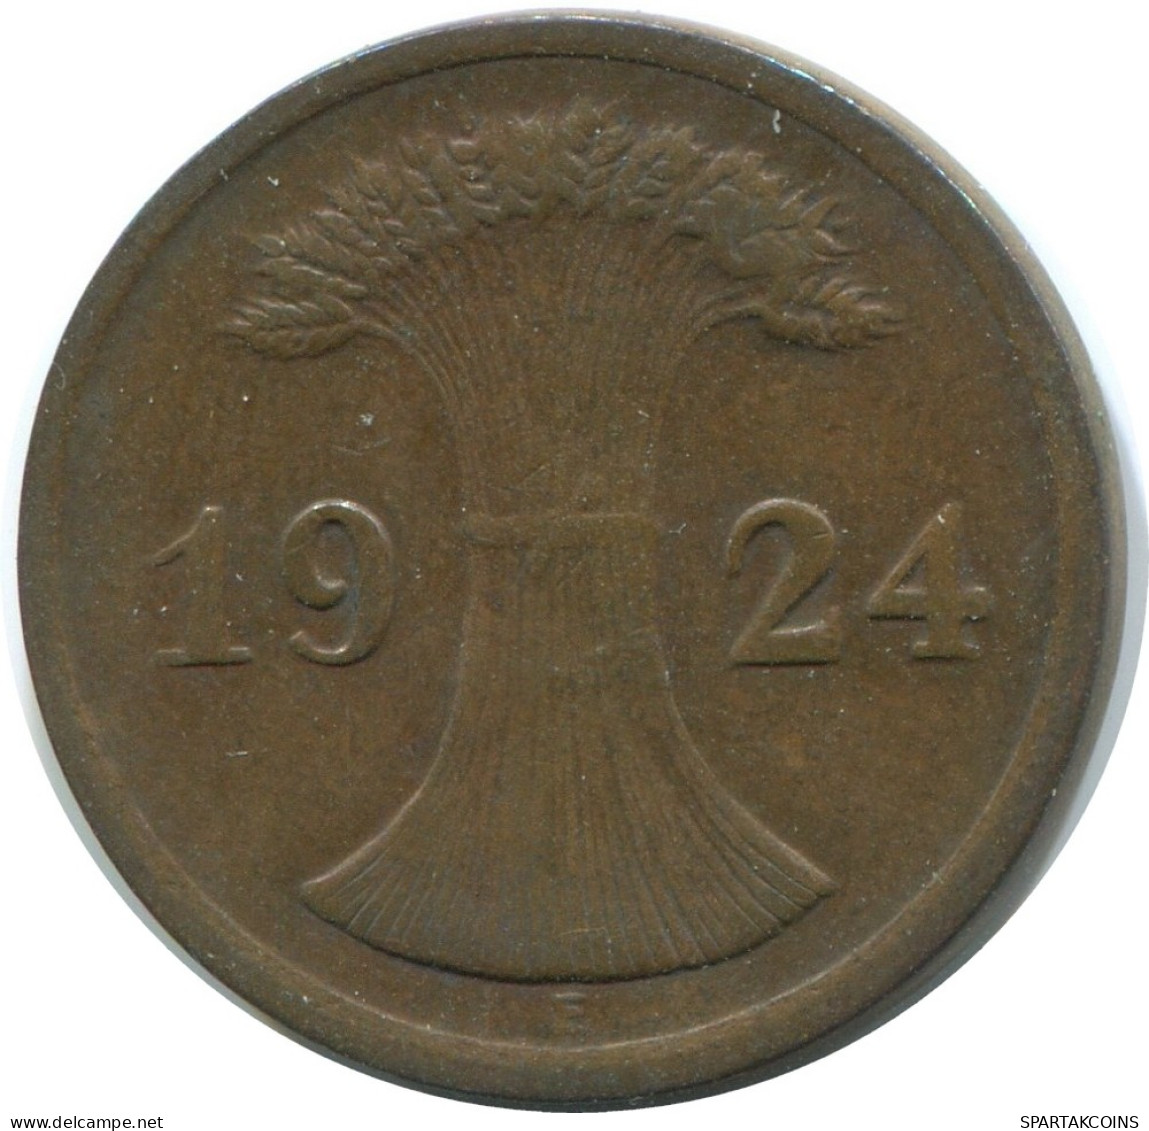 2 RENTENPFENNIG 1924 E ALEMANIA Moneda GERMANY #AE274.E - 2 Rentenpfennig & 2 Reichspfennig